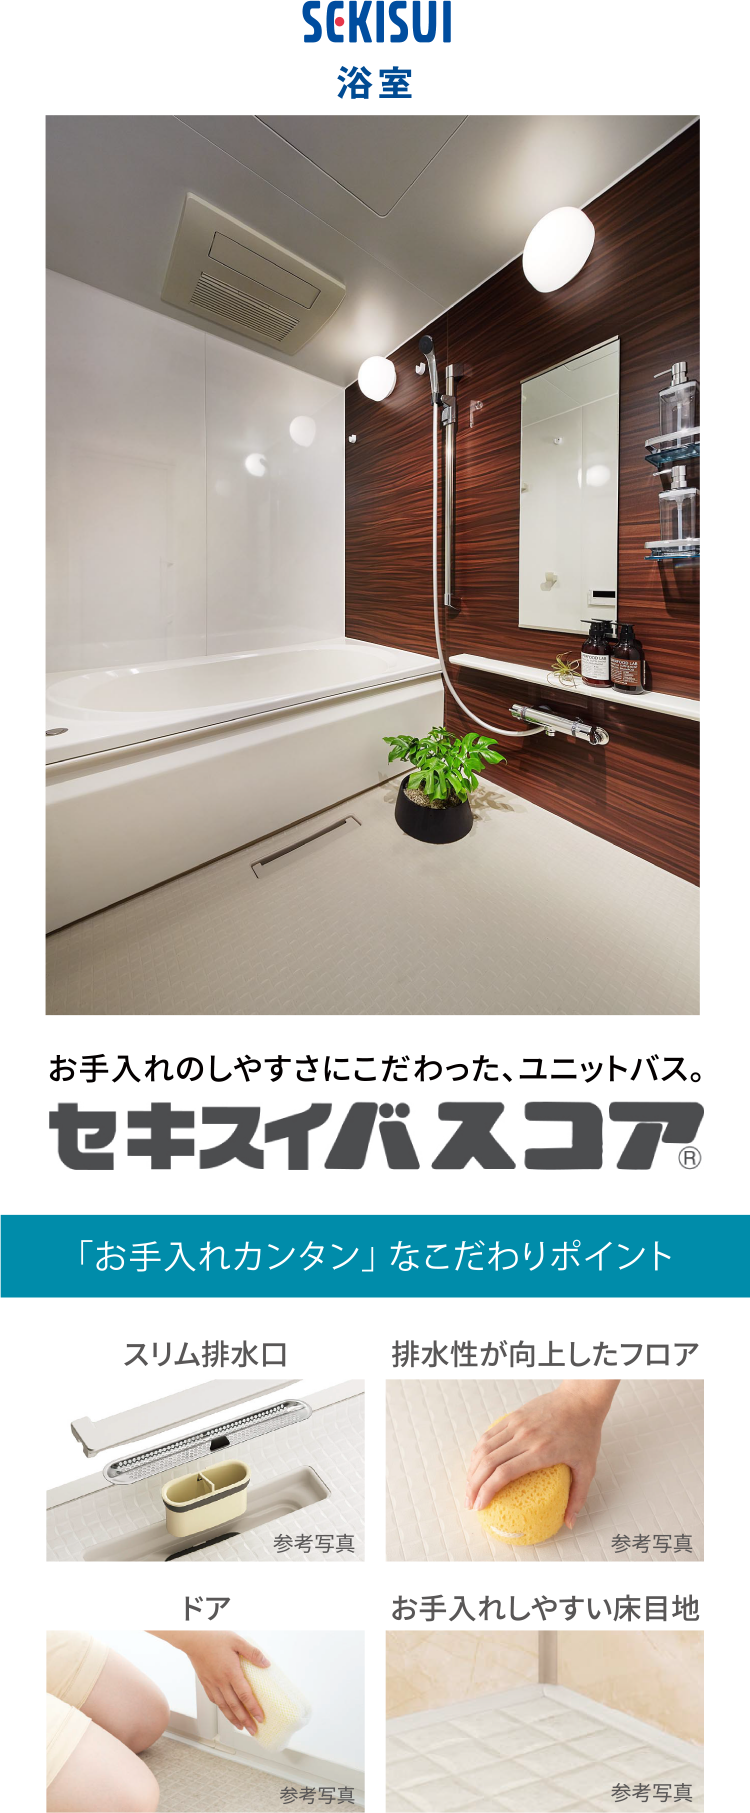 NiSUMU 浴室